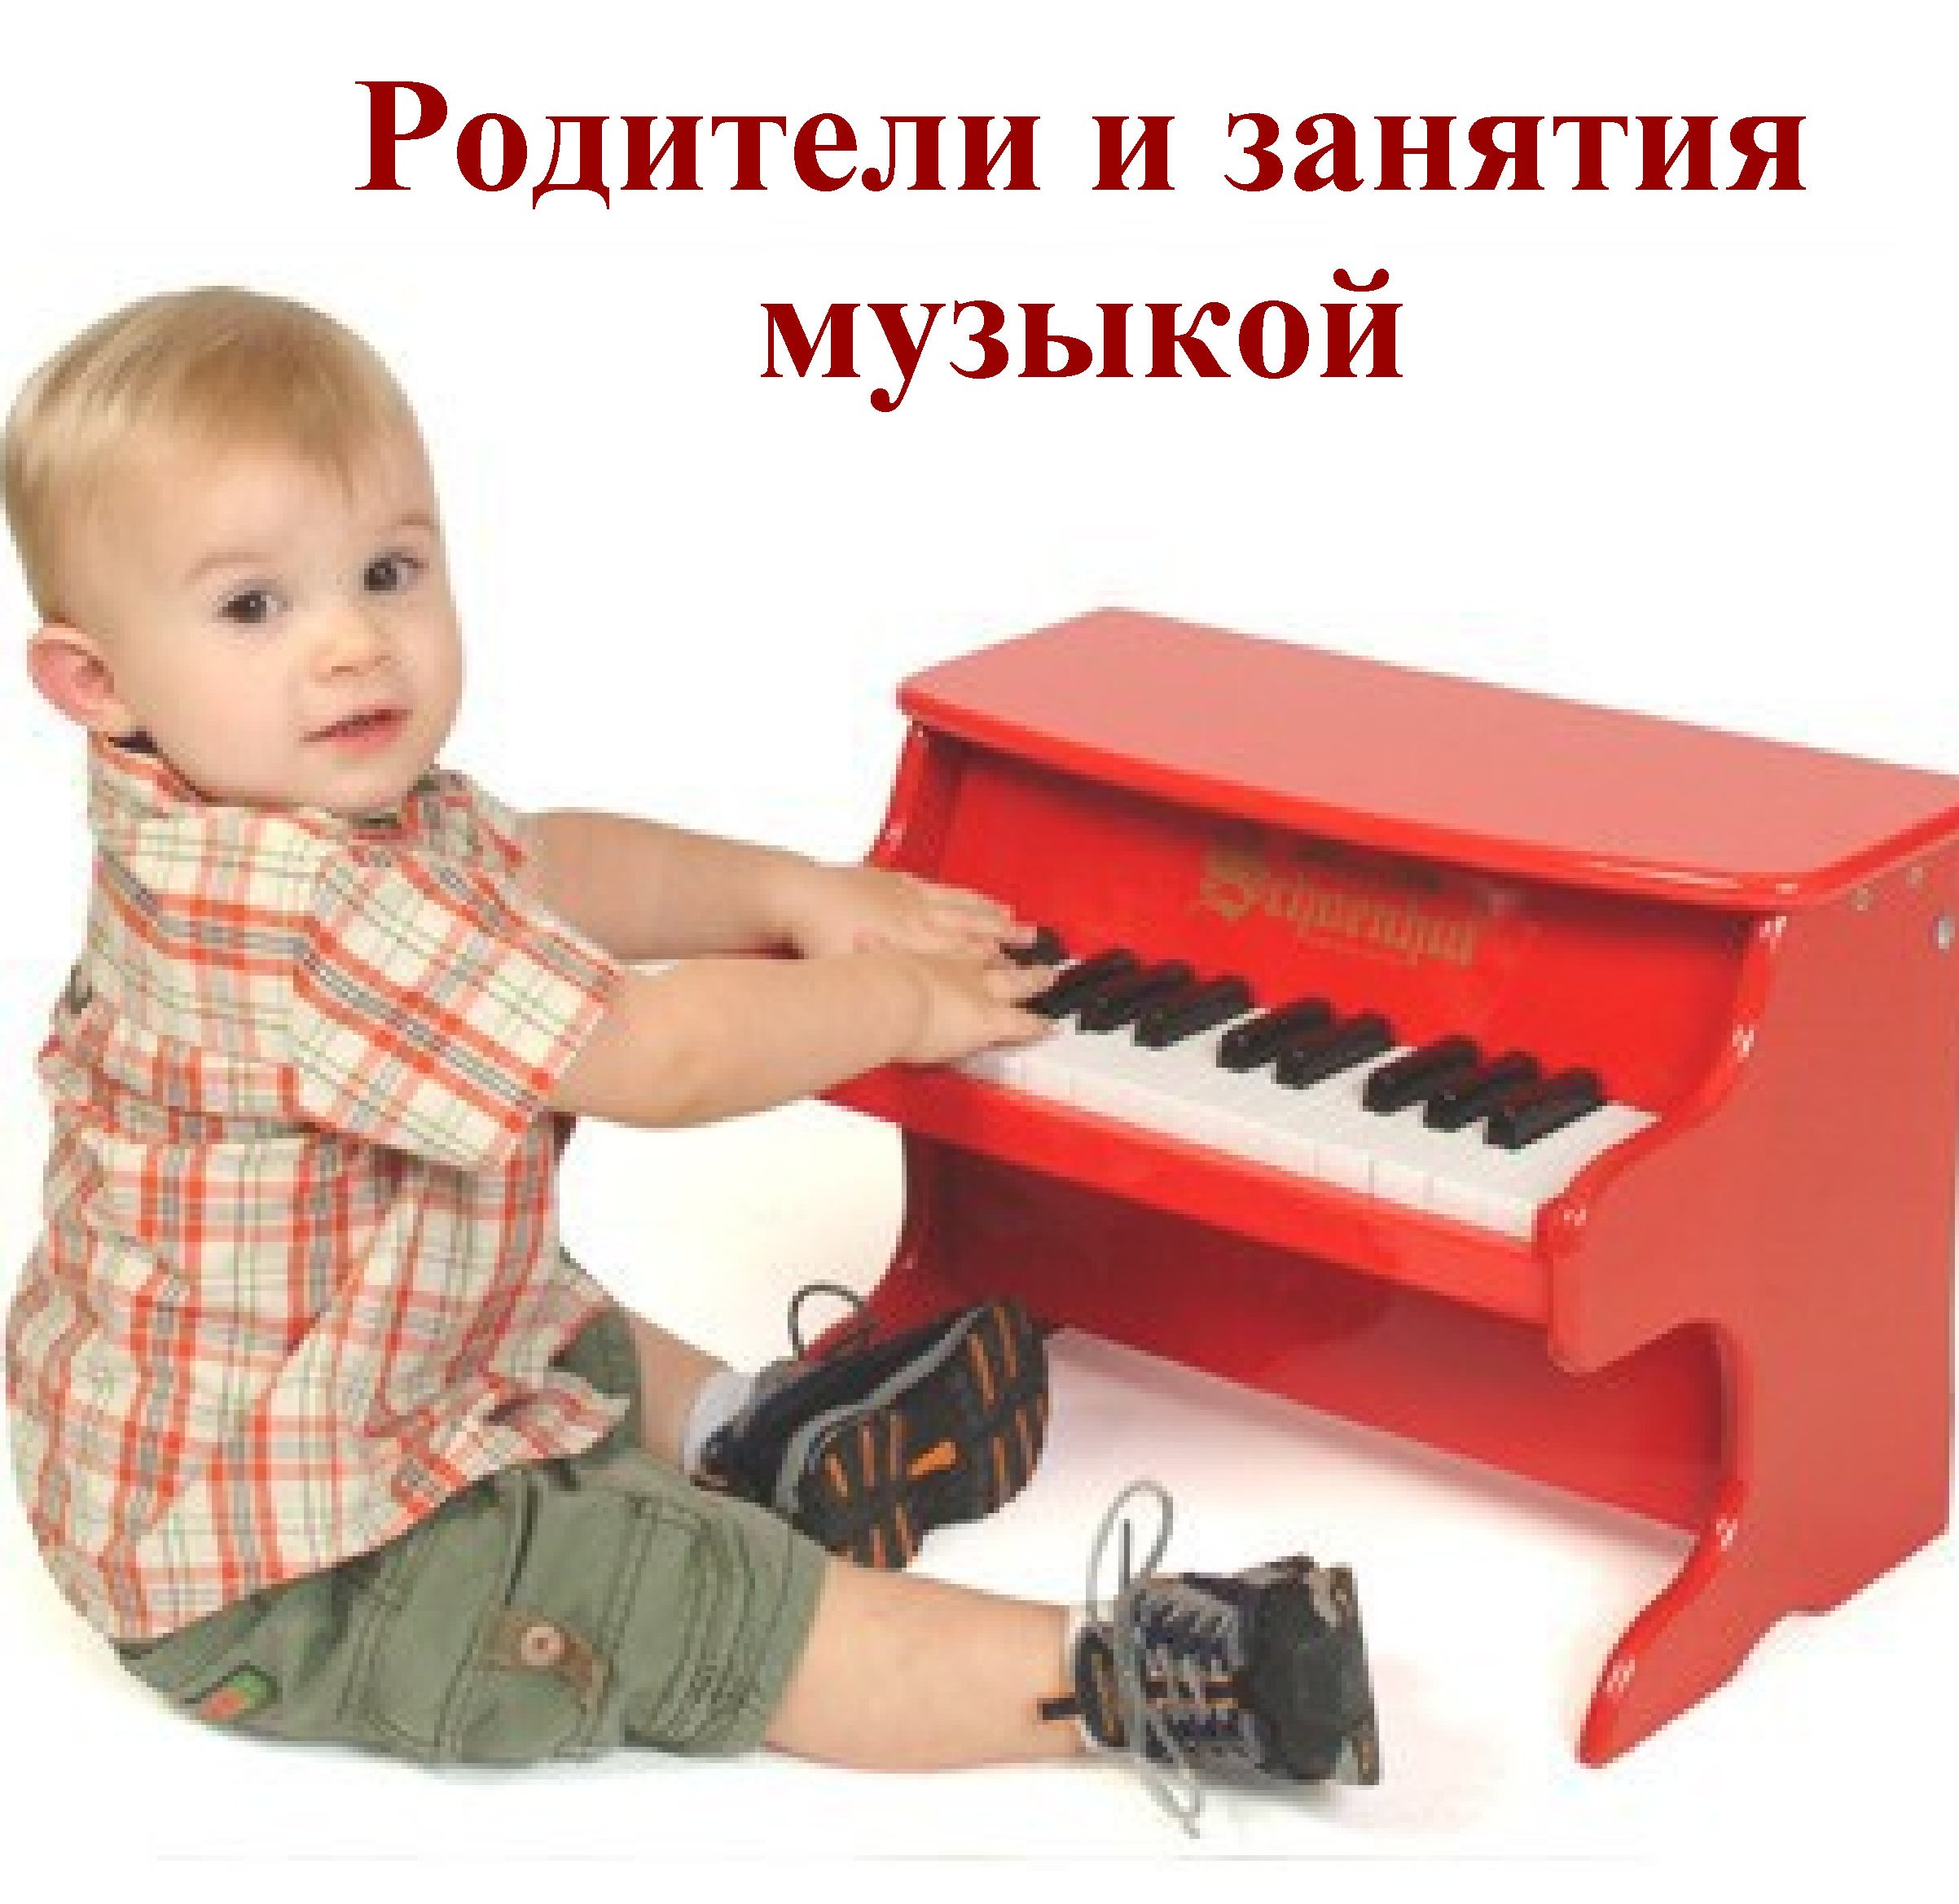 Муз развитие детей. Музыкальные инструменты для детей. Музыкальные занятия для малышей. Музыкальные инструменты для дошкольников. Пианино в детском саду.